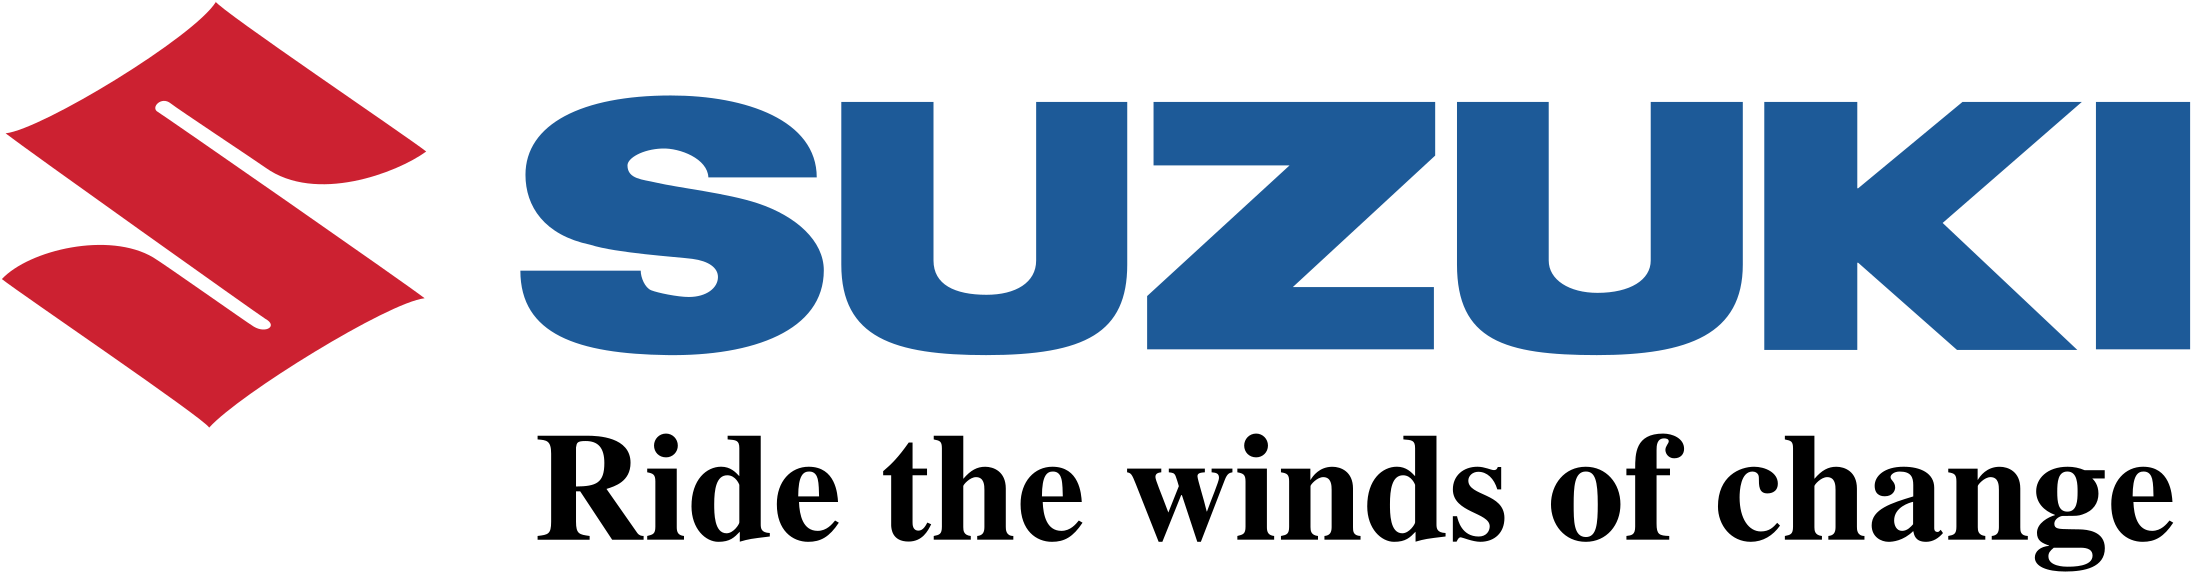 Logo Suzuki Free Transparent Image HD PNG Image